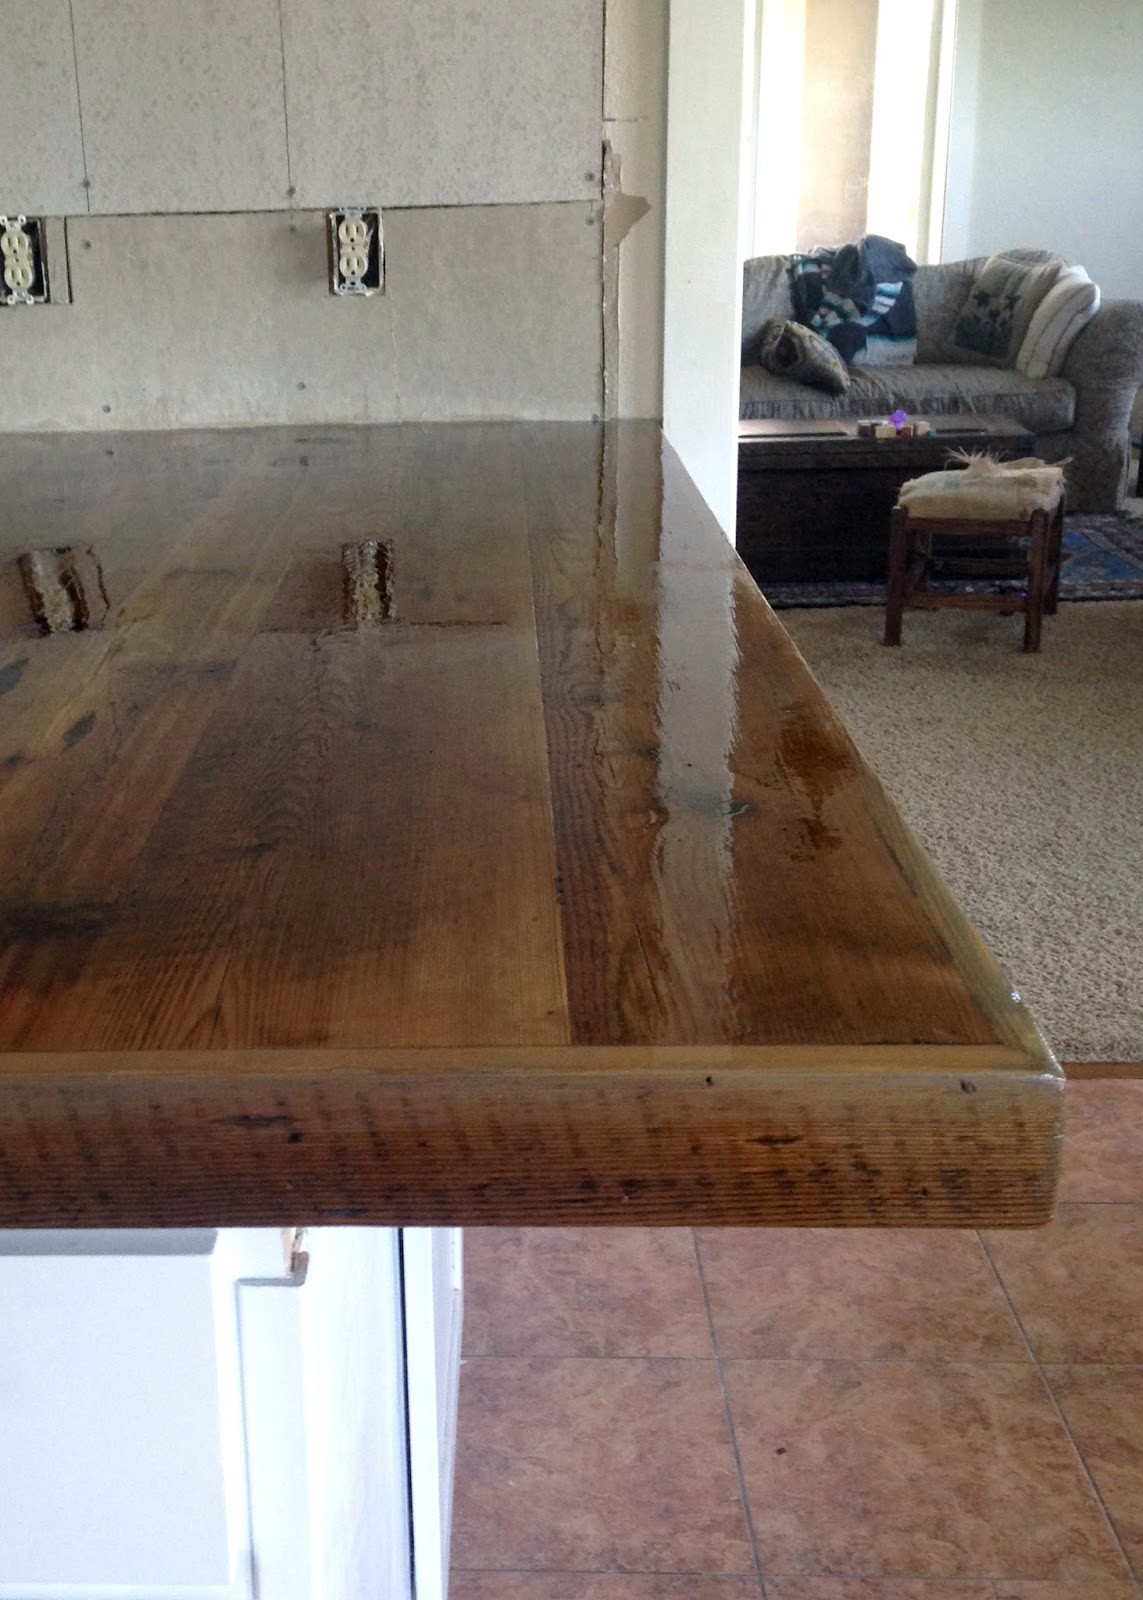 DIY Wood Kitchen Countertops
 DIY Reclaimed Wood Countertop